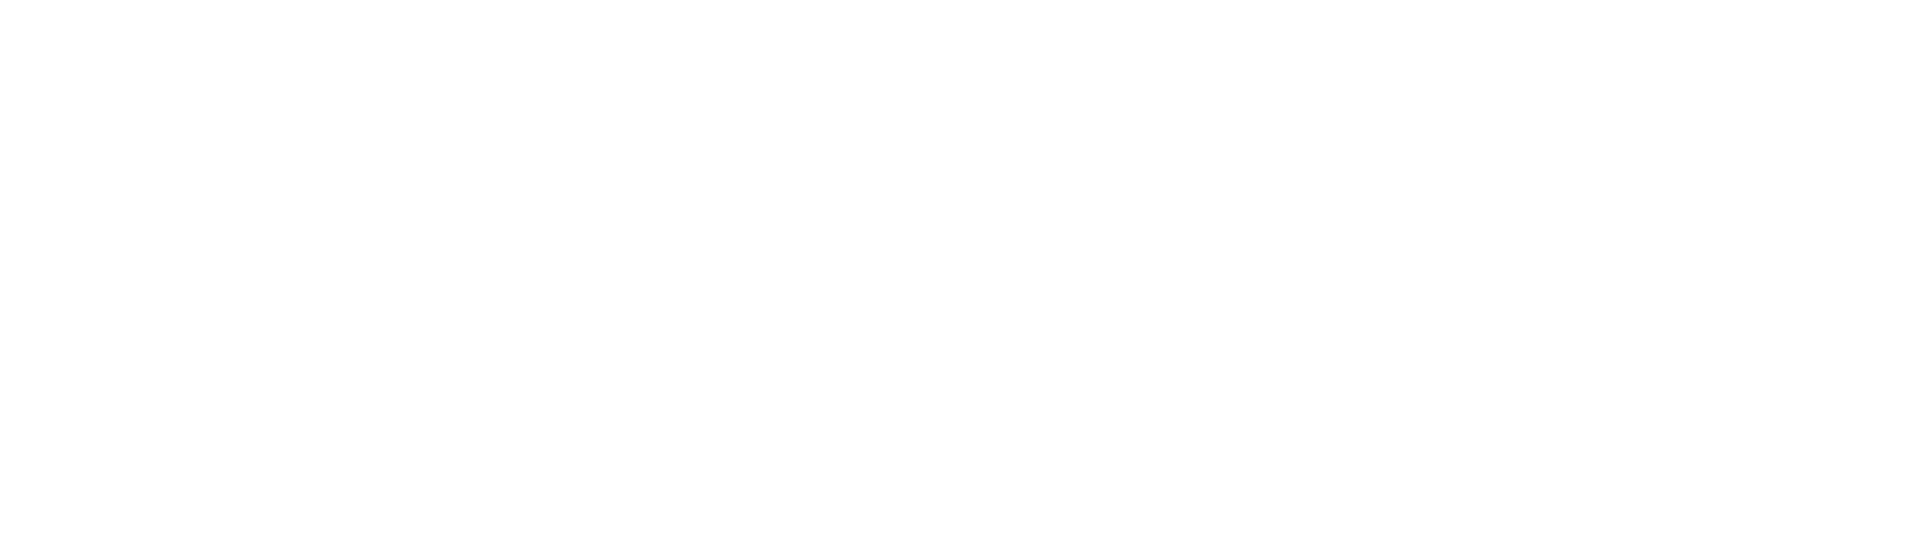 deko sign / déko logo / decographics dekographix dekographics